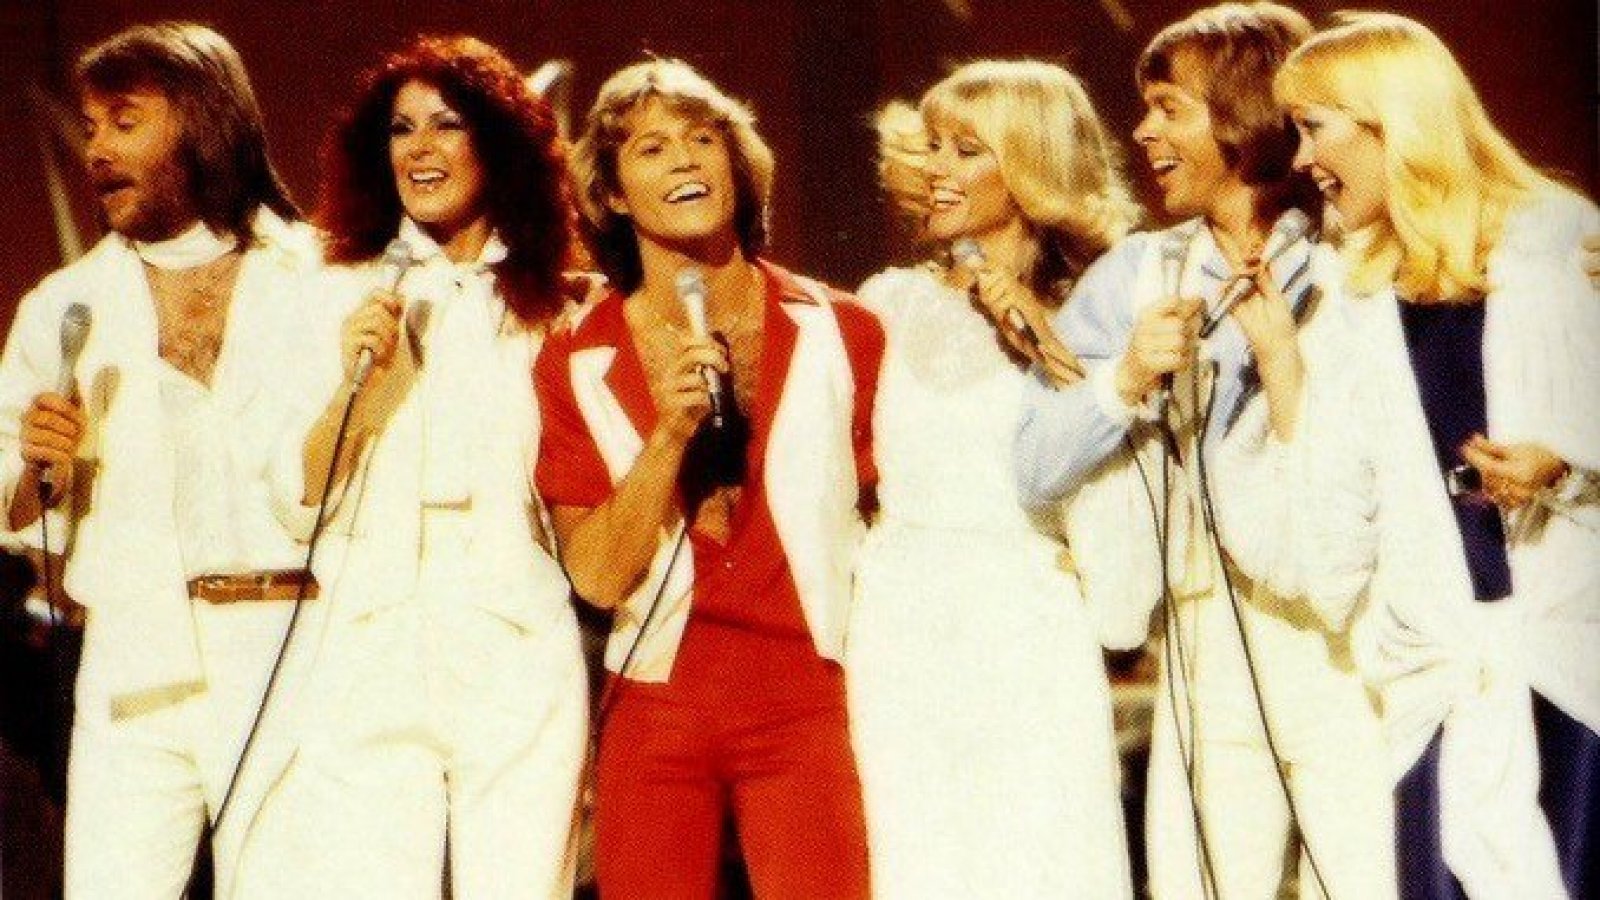 La banda ABBA dedicó sentidas palabras tras la muerte de Olivia Newton-John